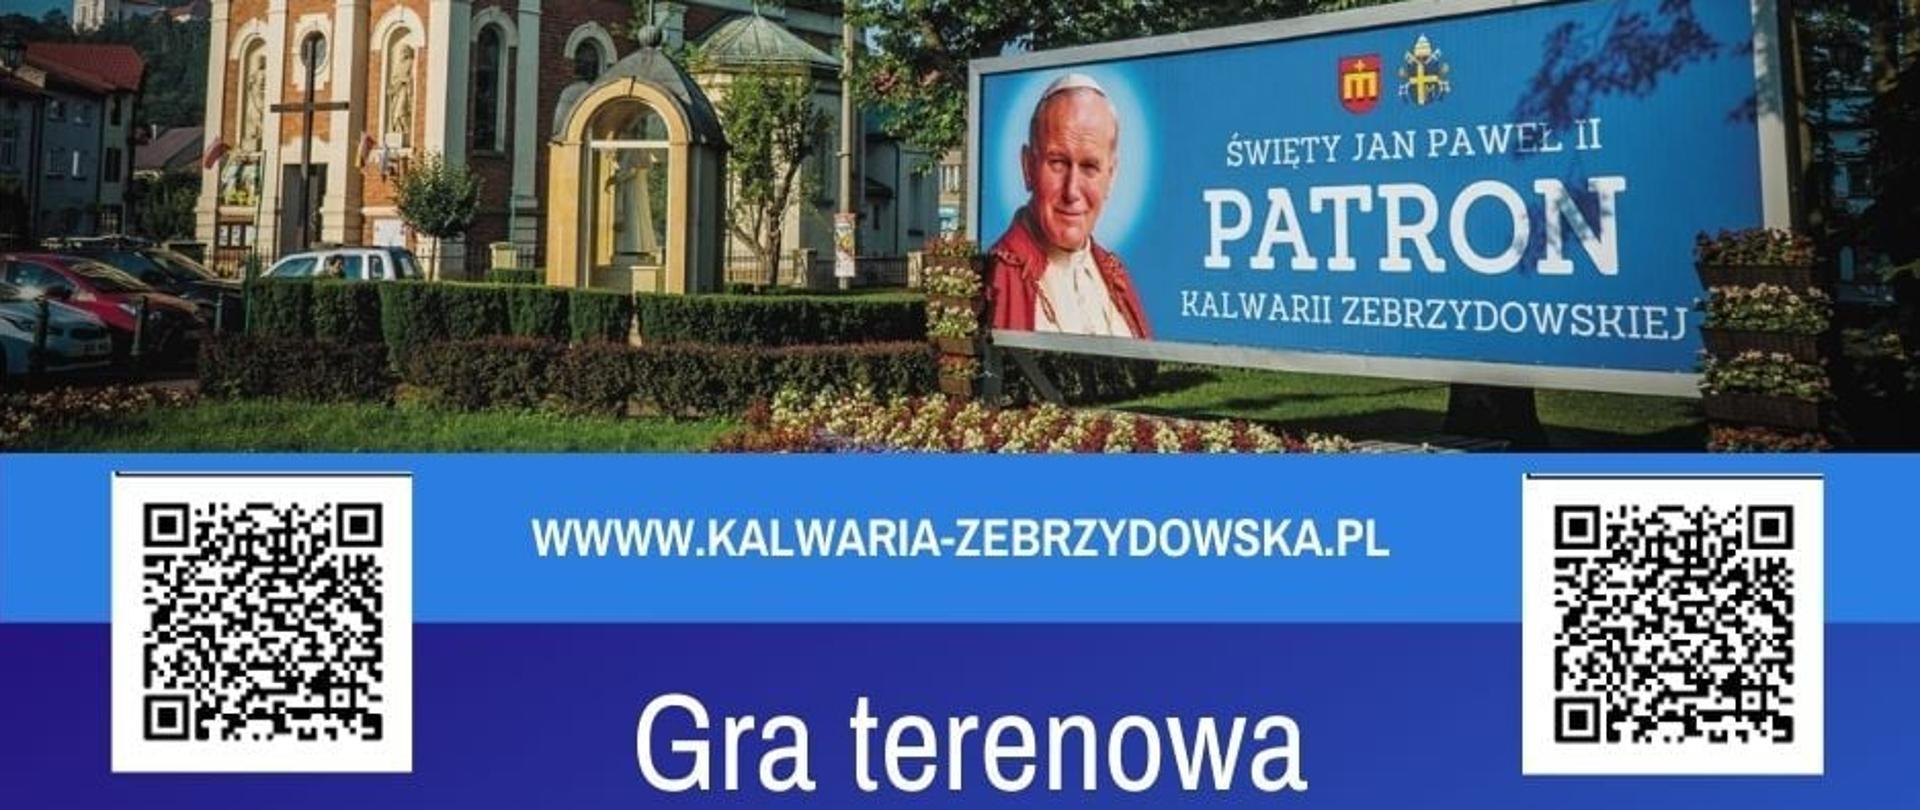 Plakat - Gra terenowa "Śladami Jana Pawła II"